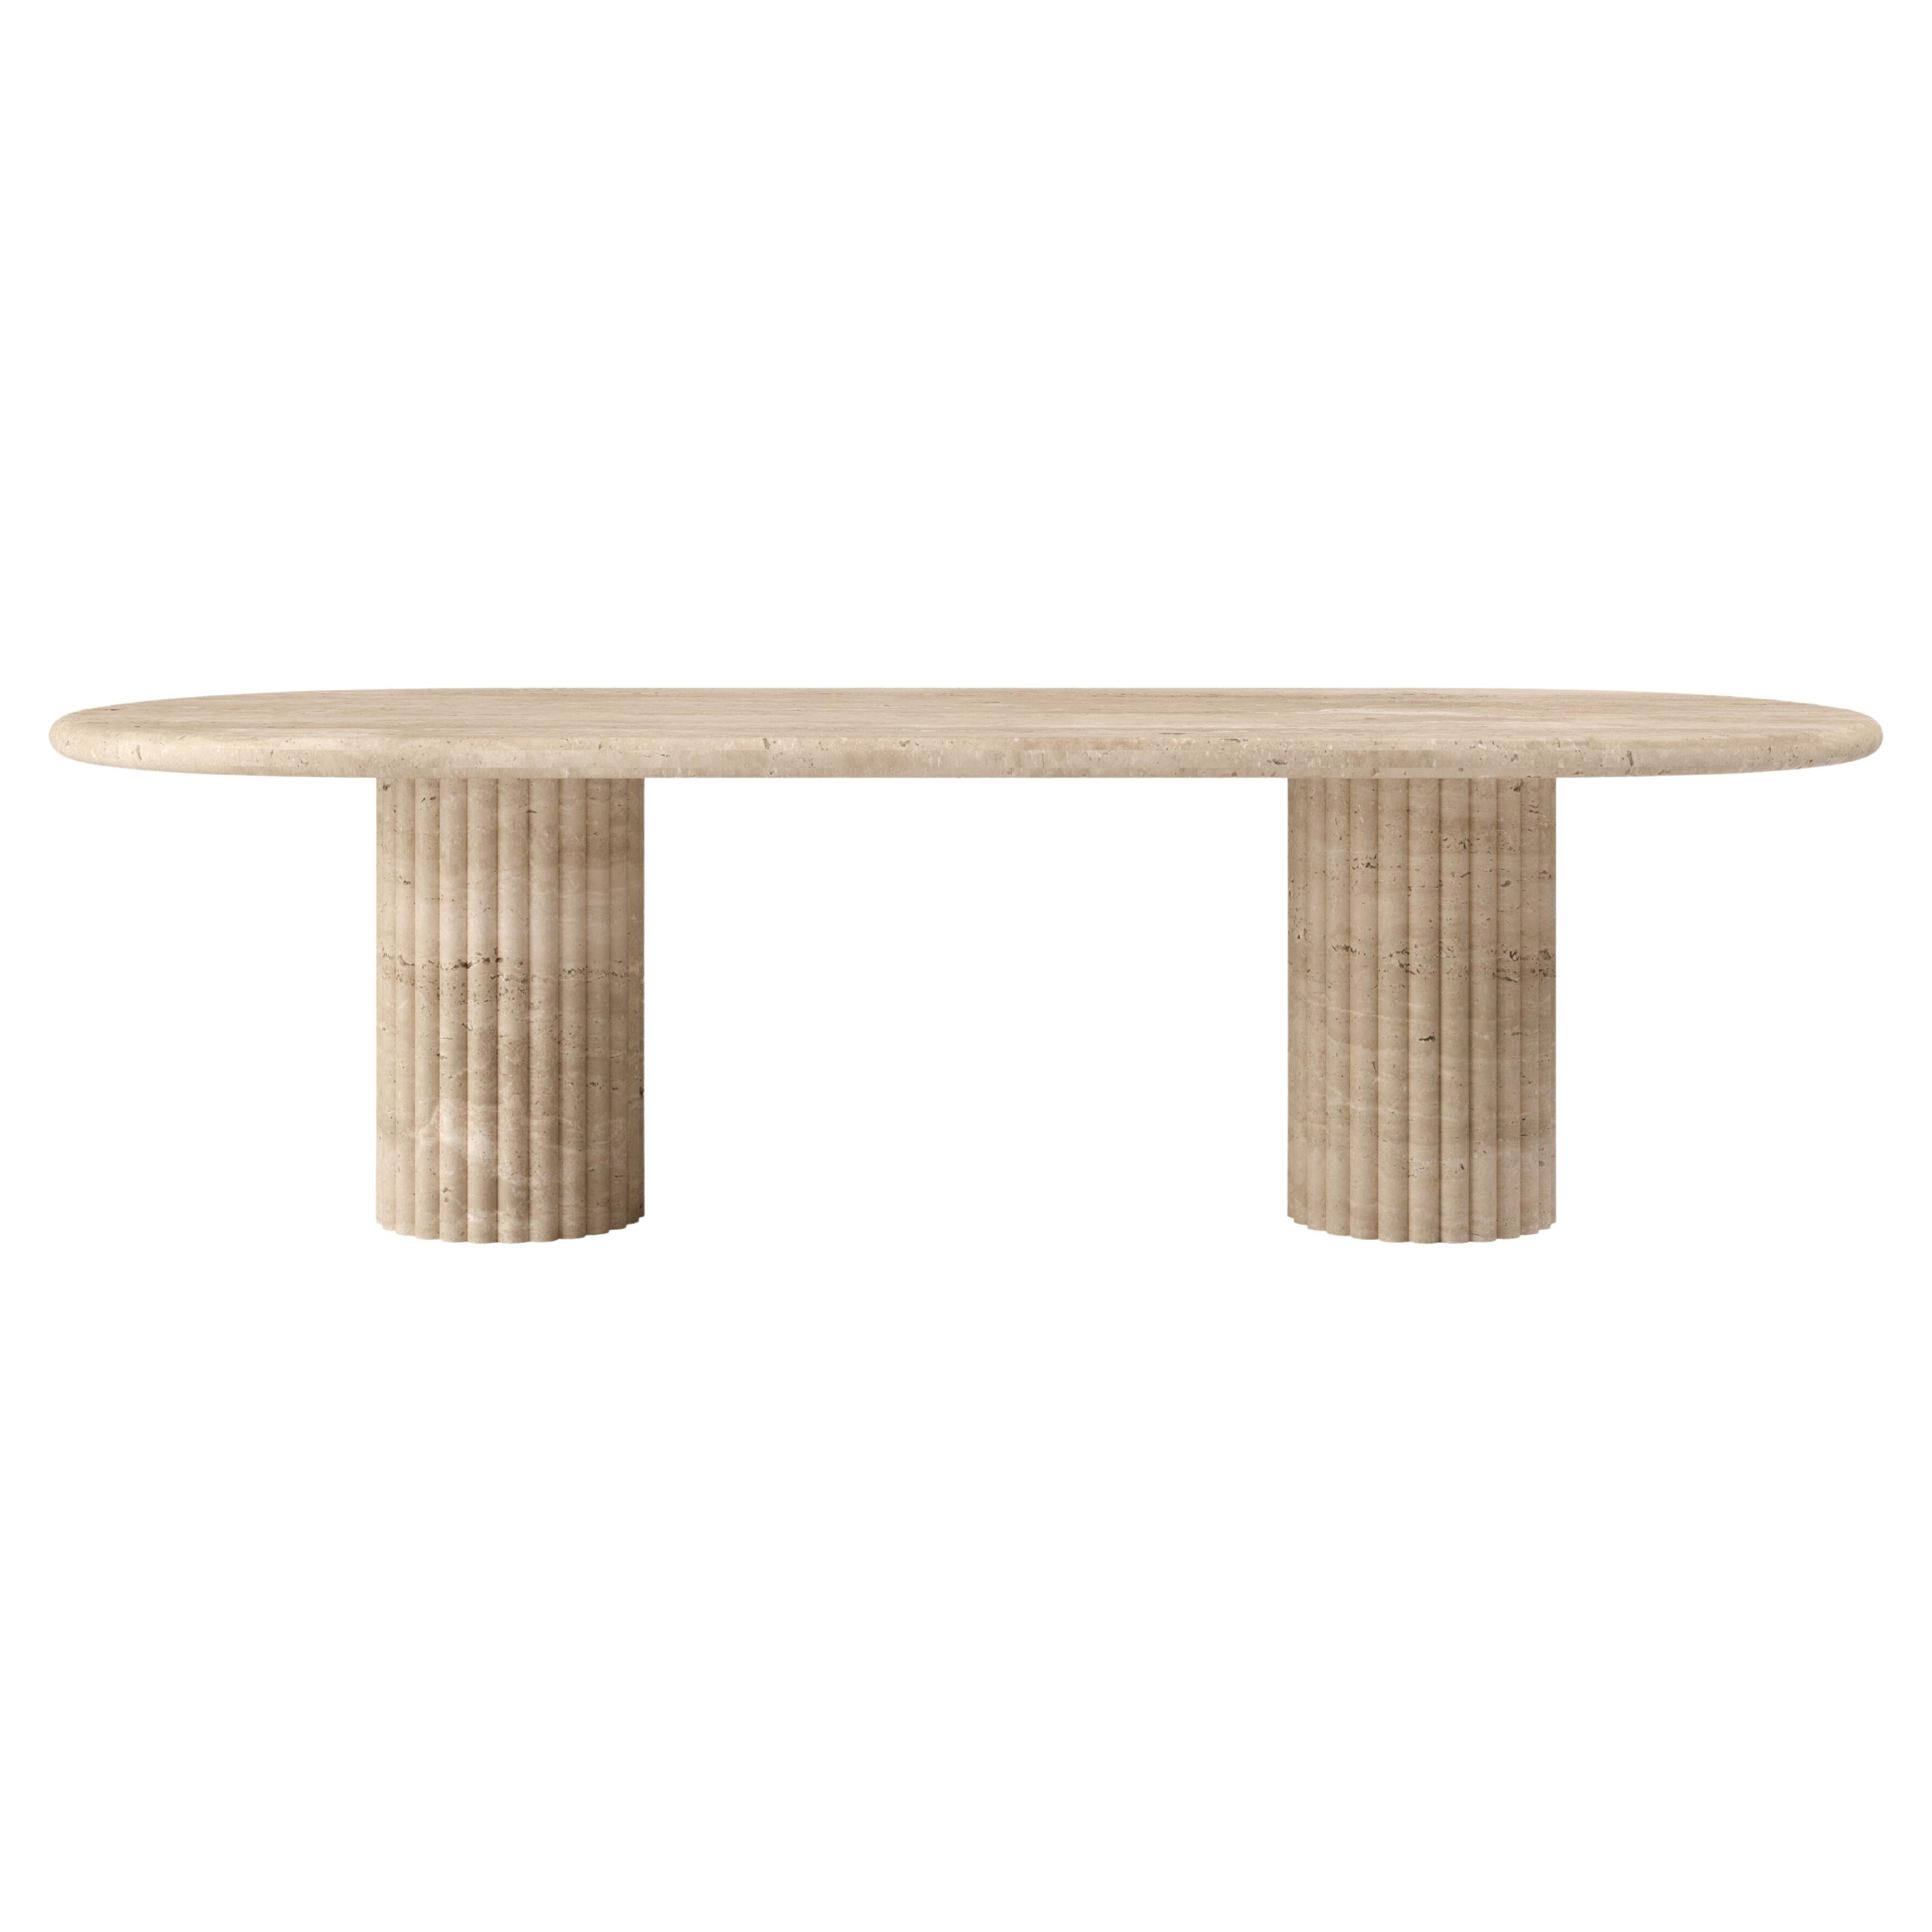 FORM(LA) Fluta Oval Dining Table 84”L x 42”W x 30”H Travertino Crema VC For Sale